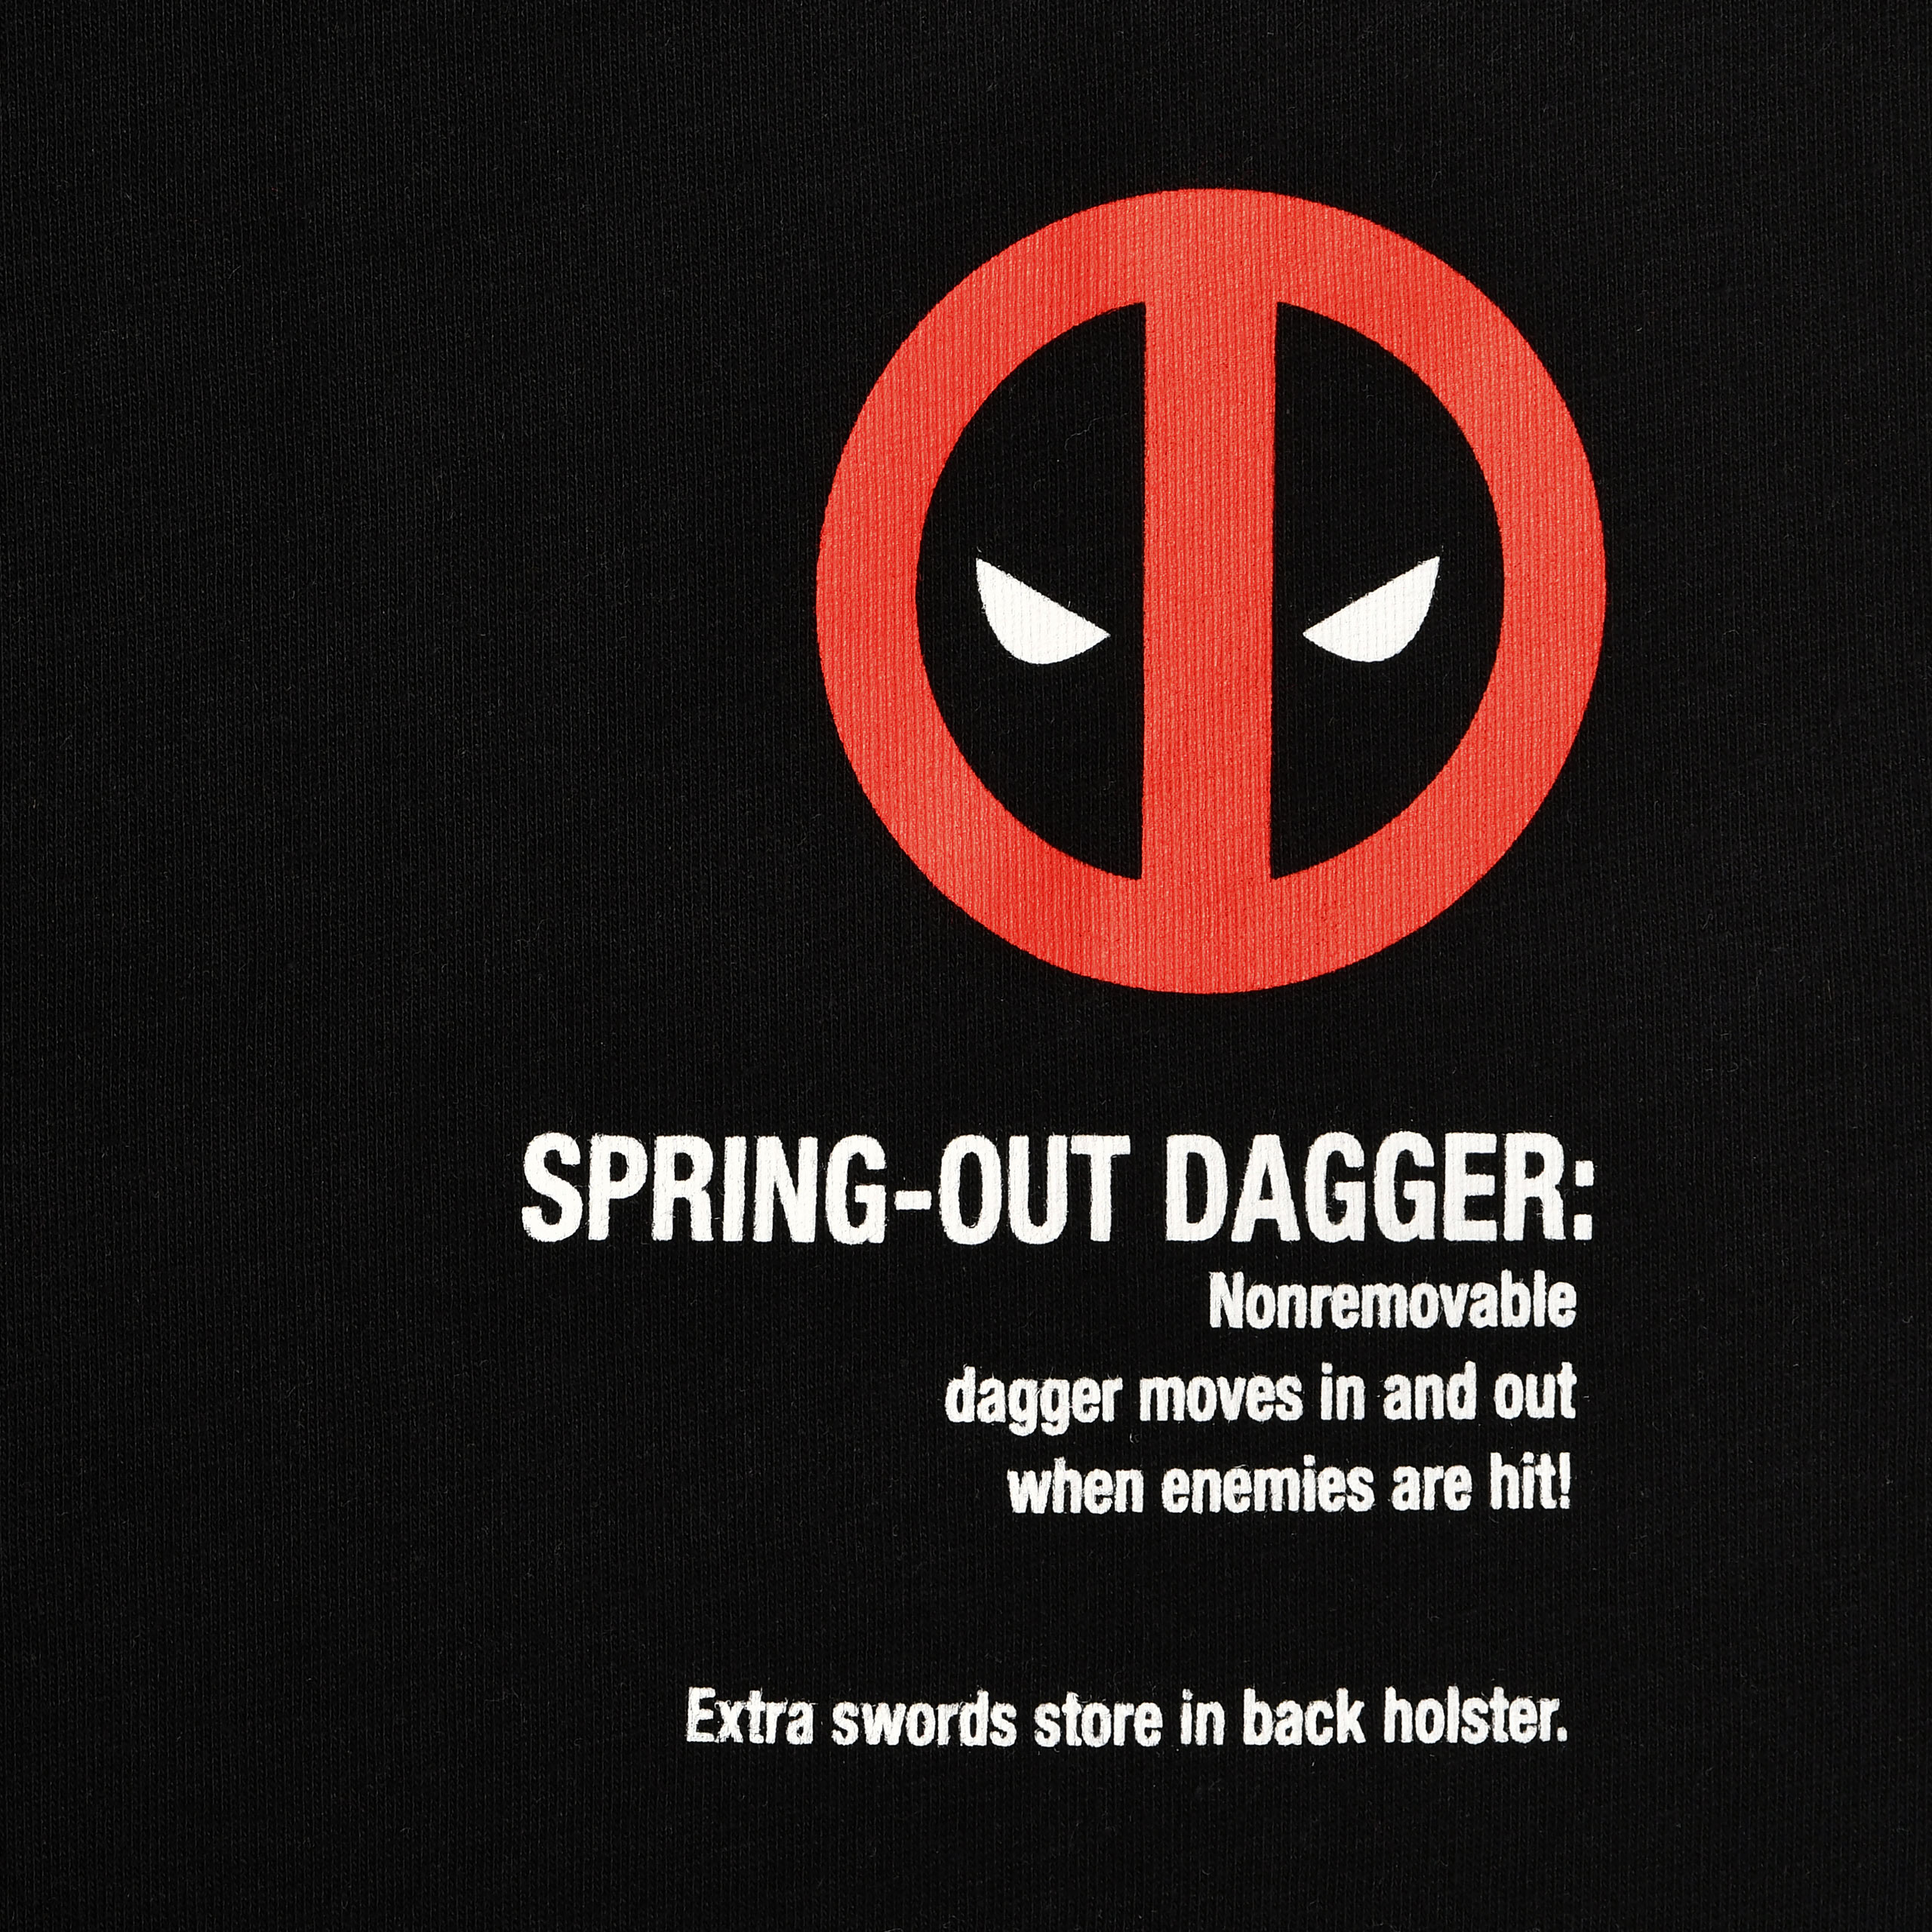 Deadpool - Wanted T-shirt zwart